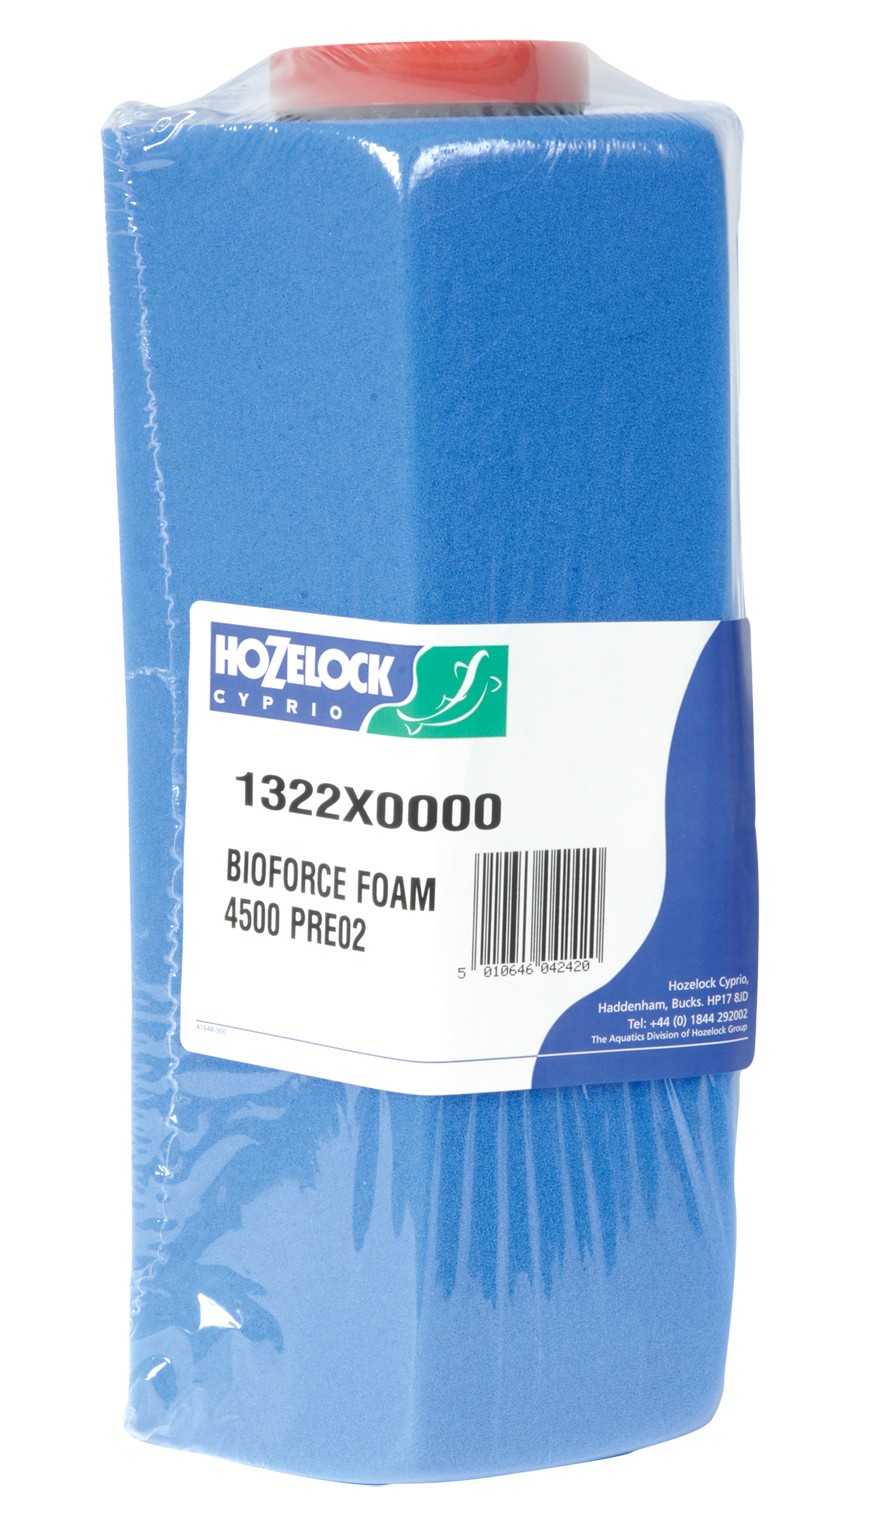 Hozelock Bioforce 4500 Filter Foam Pre 2002